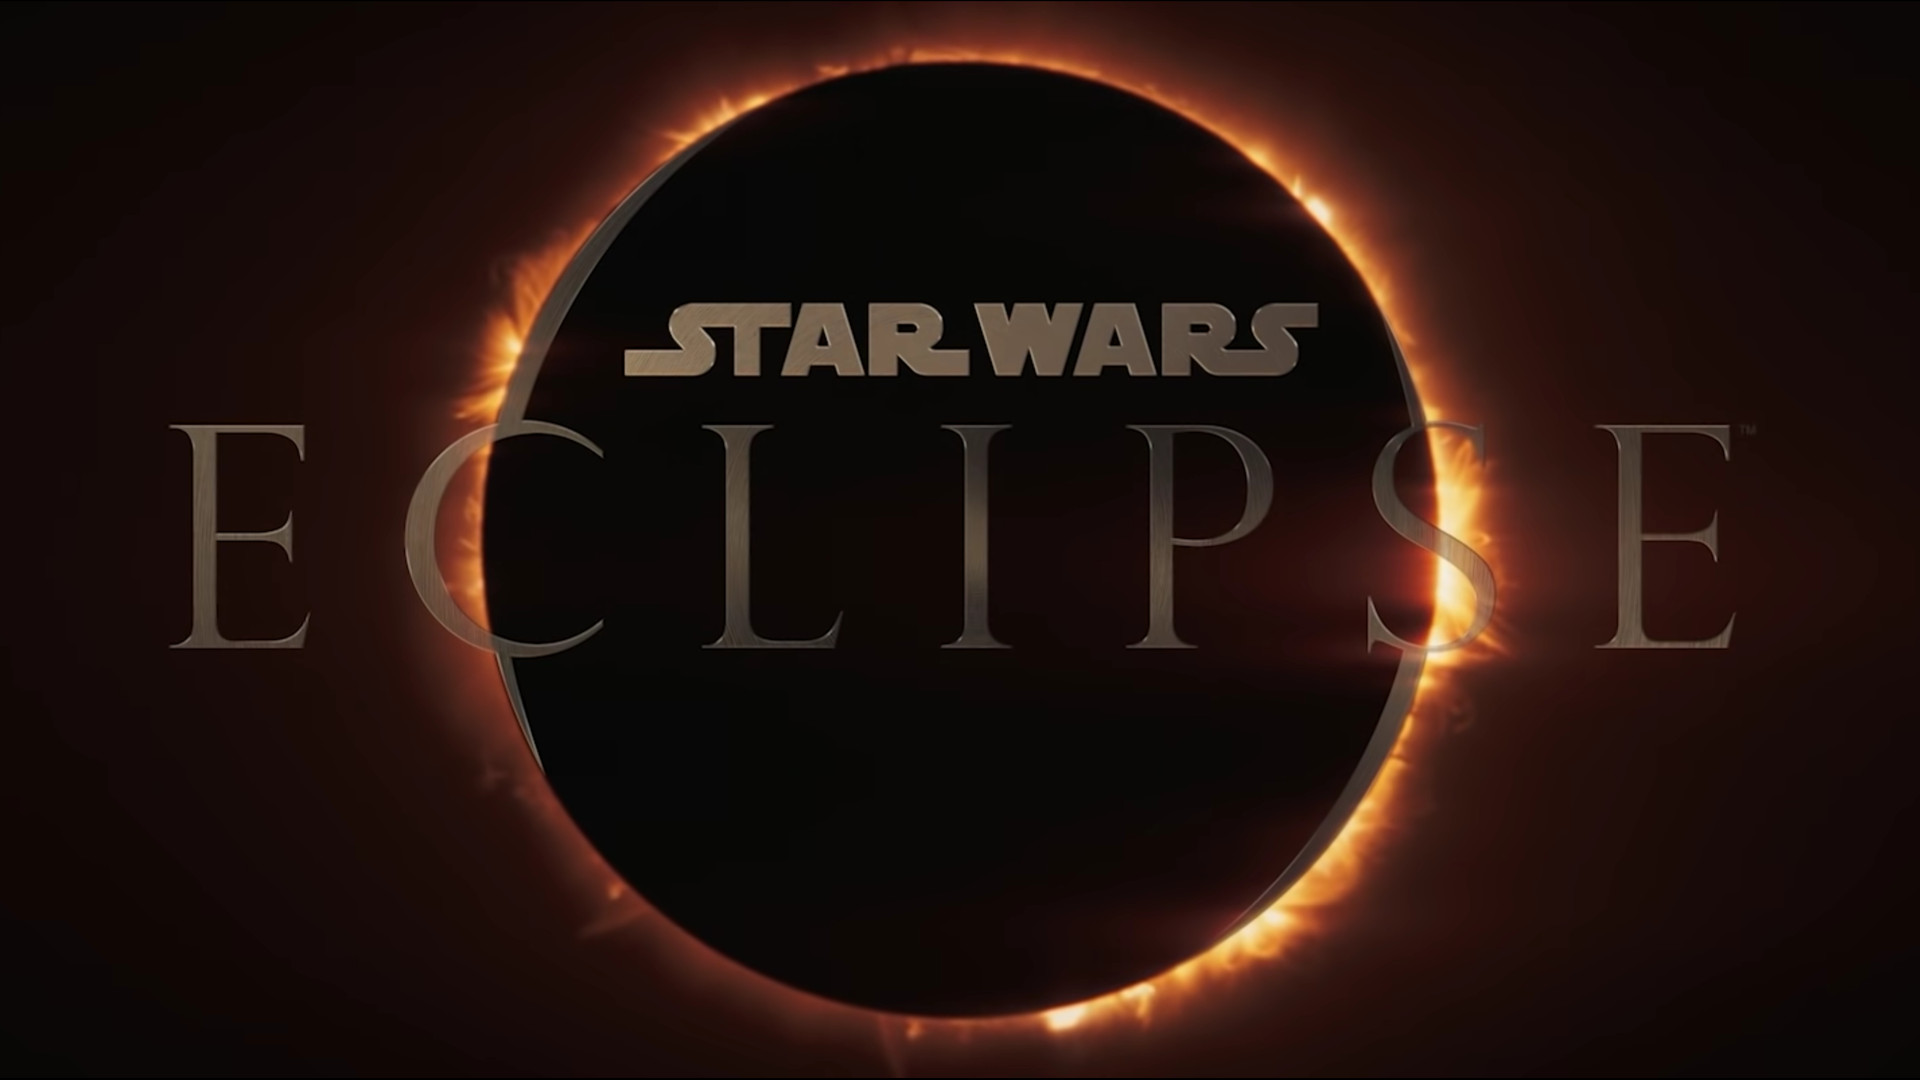 Star Wars Eclipse